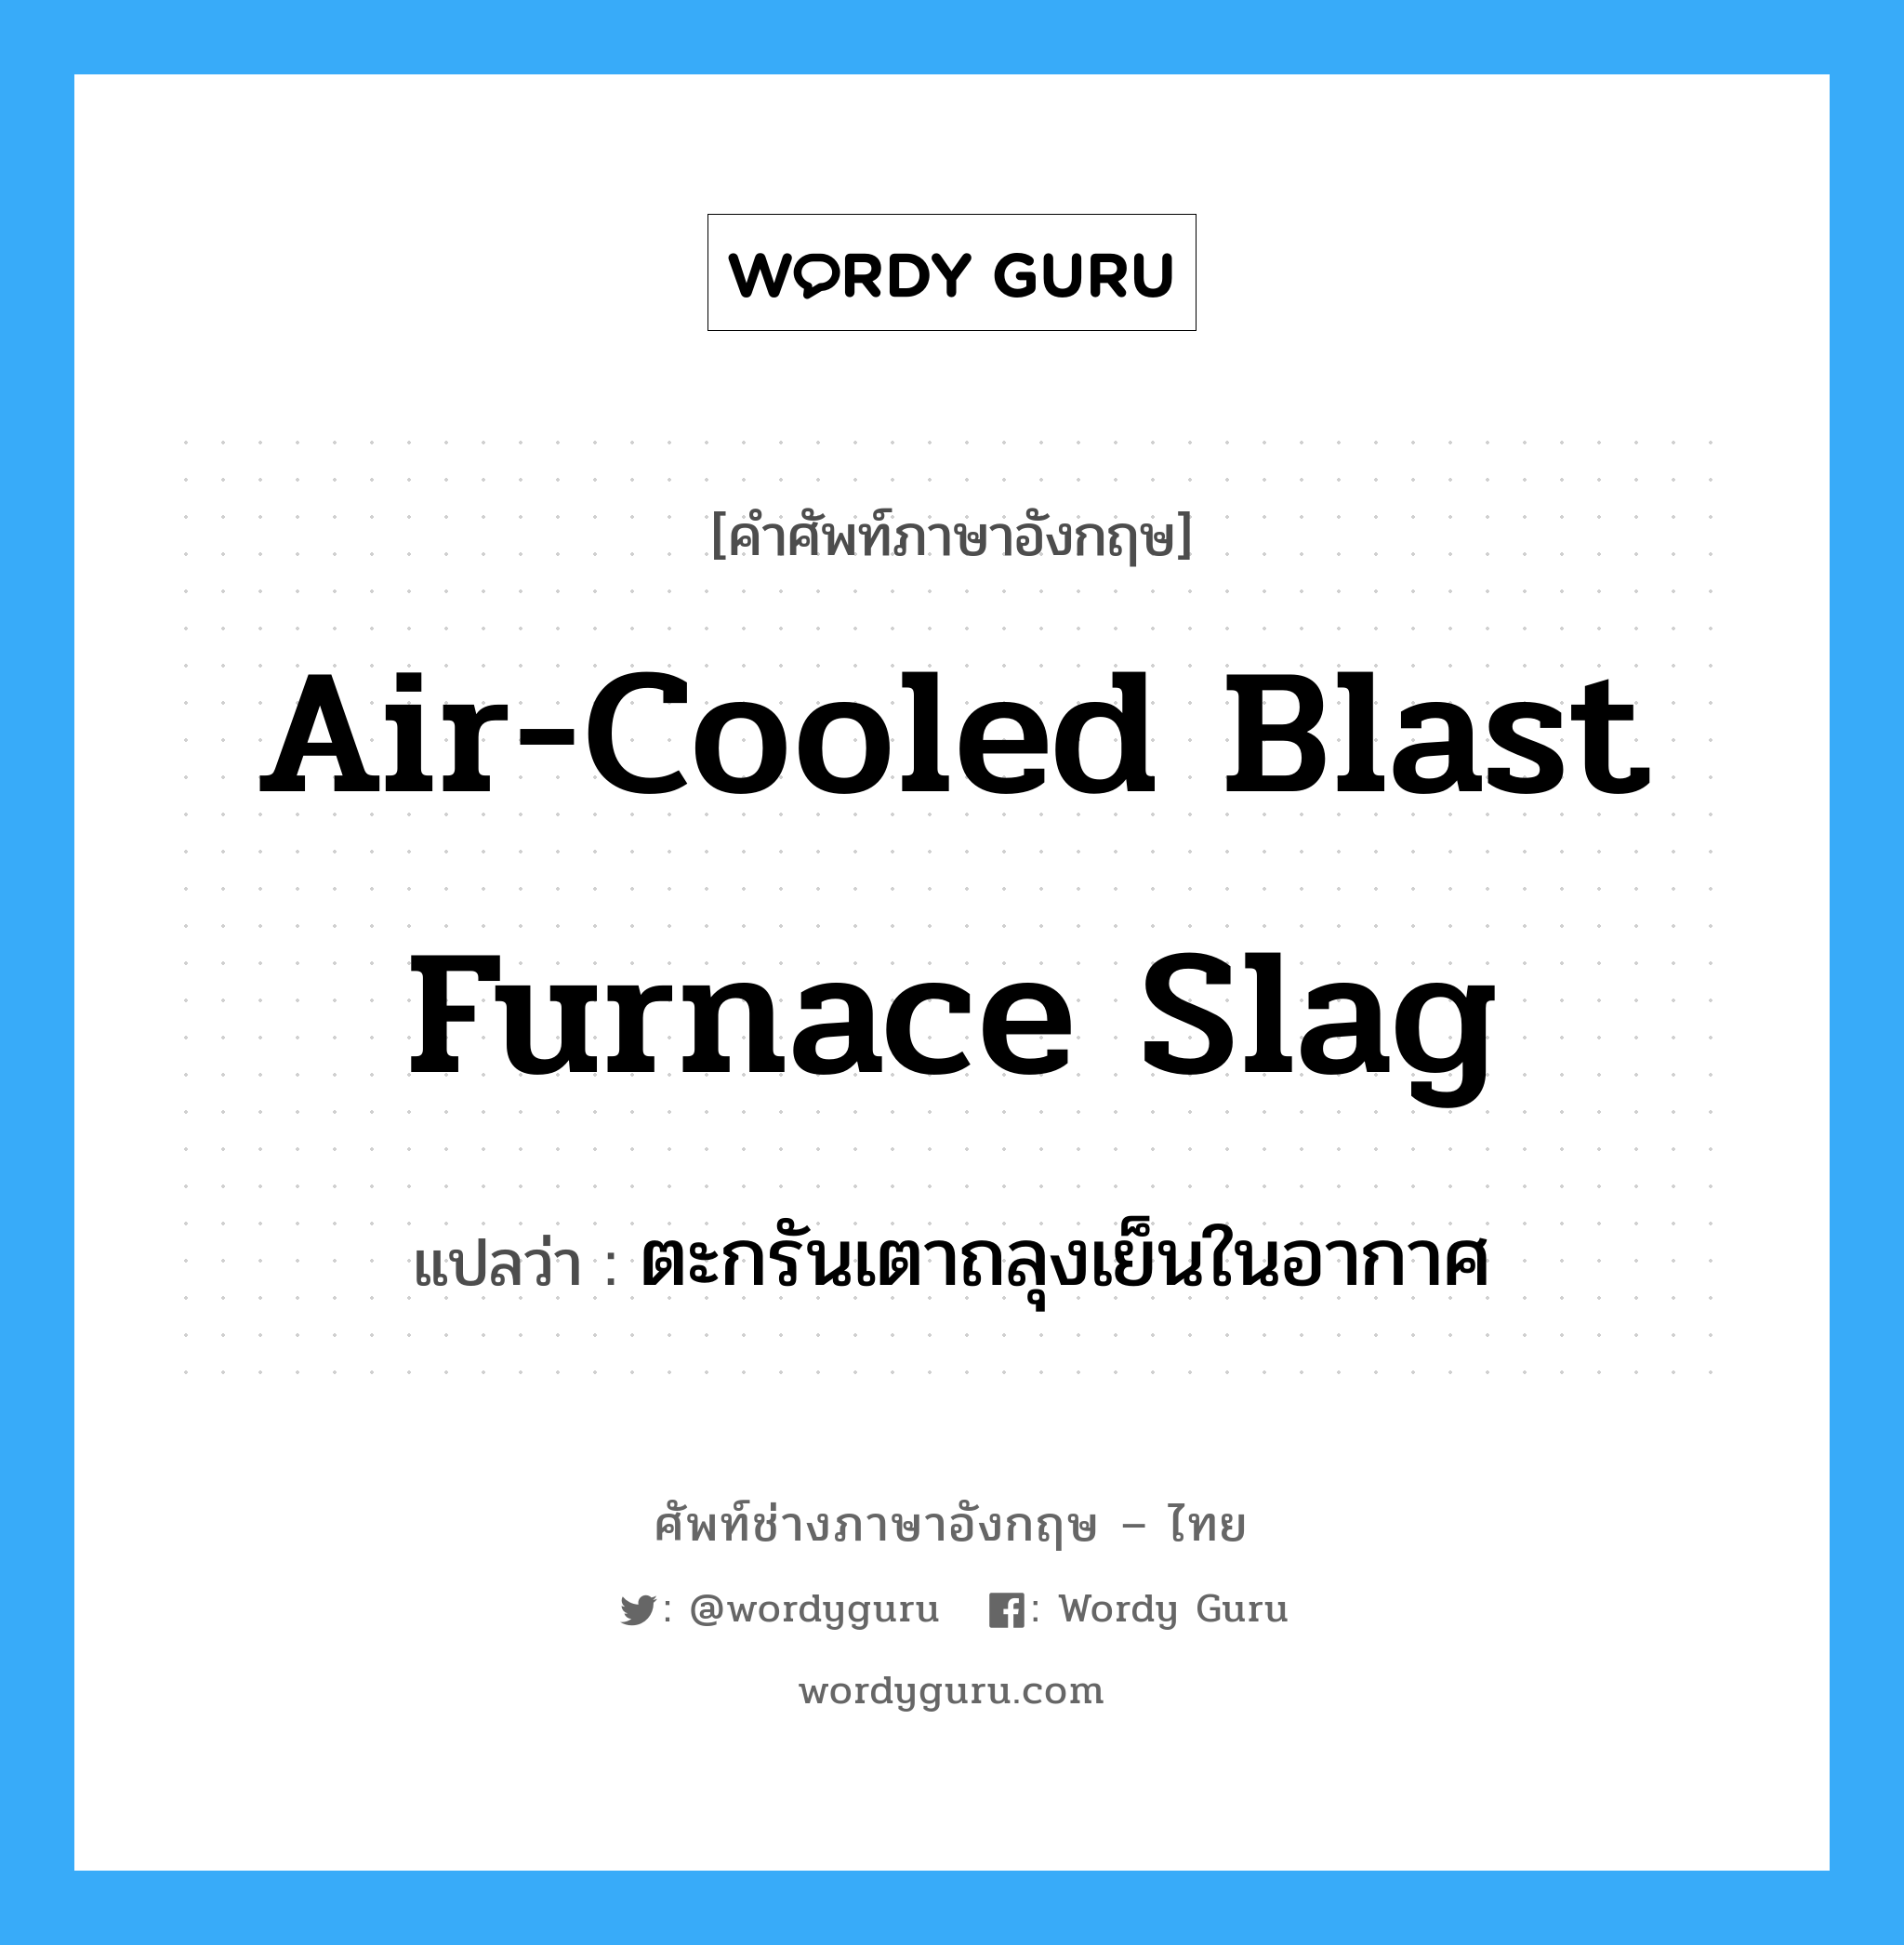 ตะกรันเตาถลุงเย็นในอากาศ ภาษาอังกฤษ?, คำศัพท์ช่างภาษาอังกฤษ - ไทย ตะกรันเตาถลุงเย็นในอากาศ คำศัพท์ภาษาอังกฤษ ตะกรันเตาถลุงเย็นในอากาศ แปลว่า air-cooled blast furnace slag